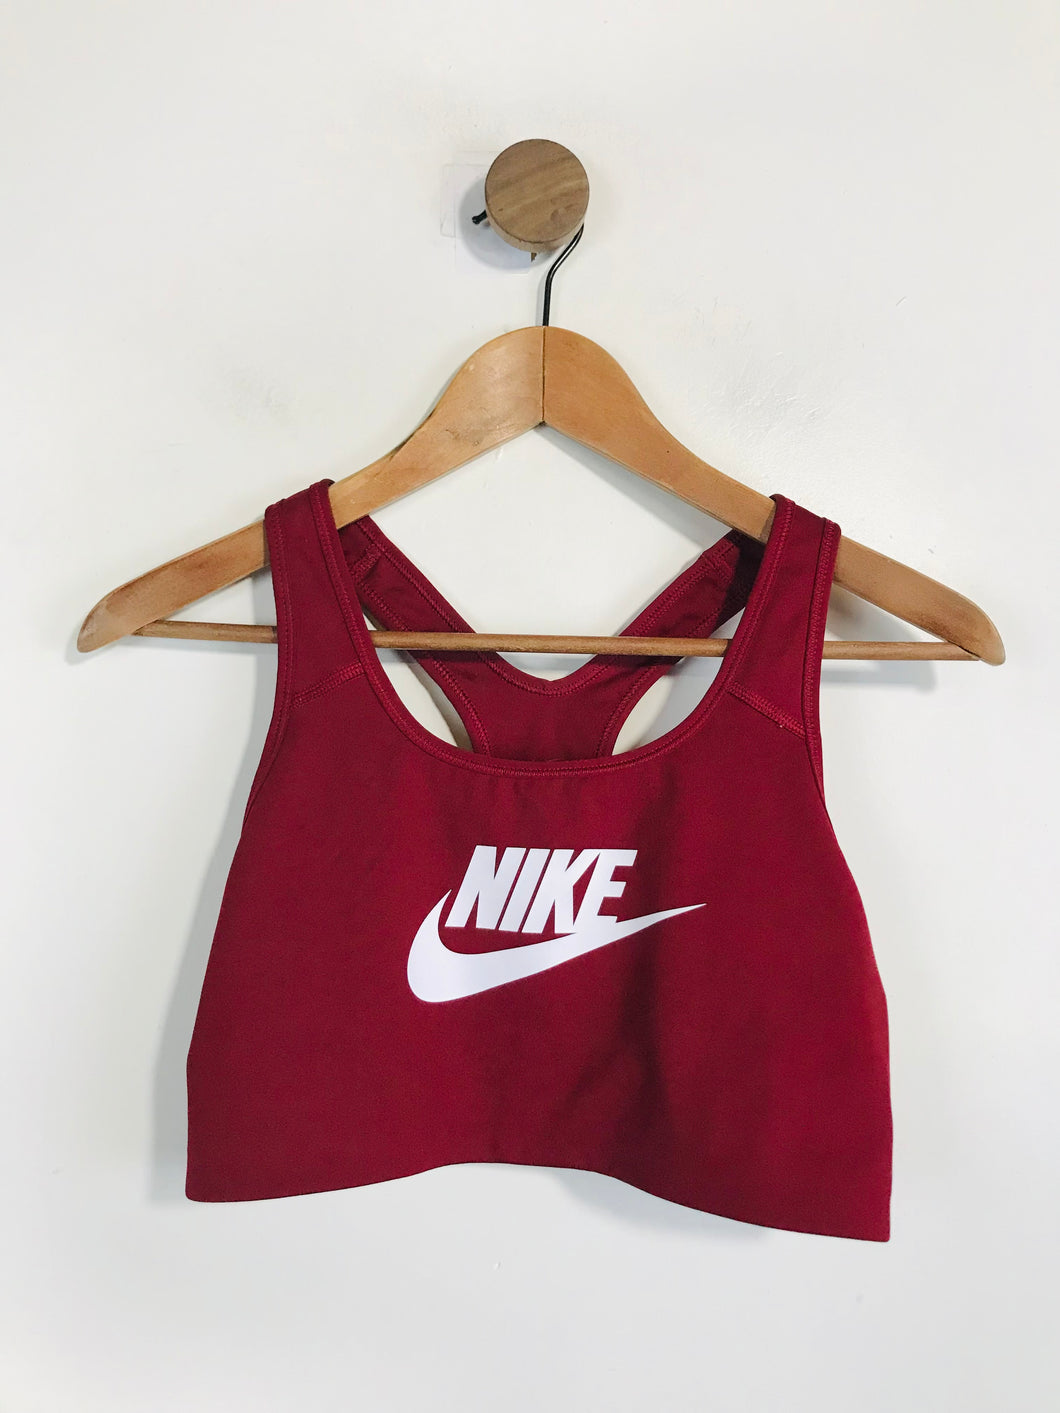 Nike Women's DRI-FIT Sports Bra | L UK14 | Red